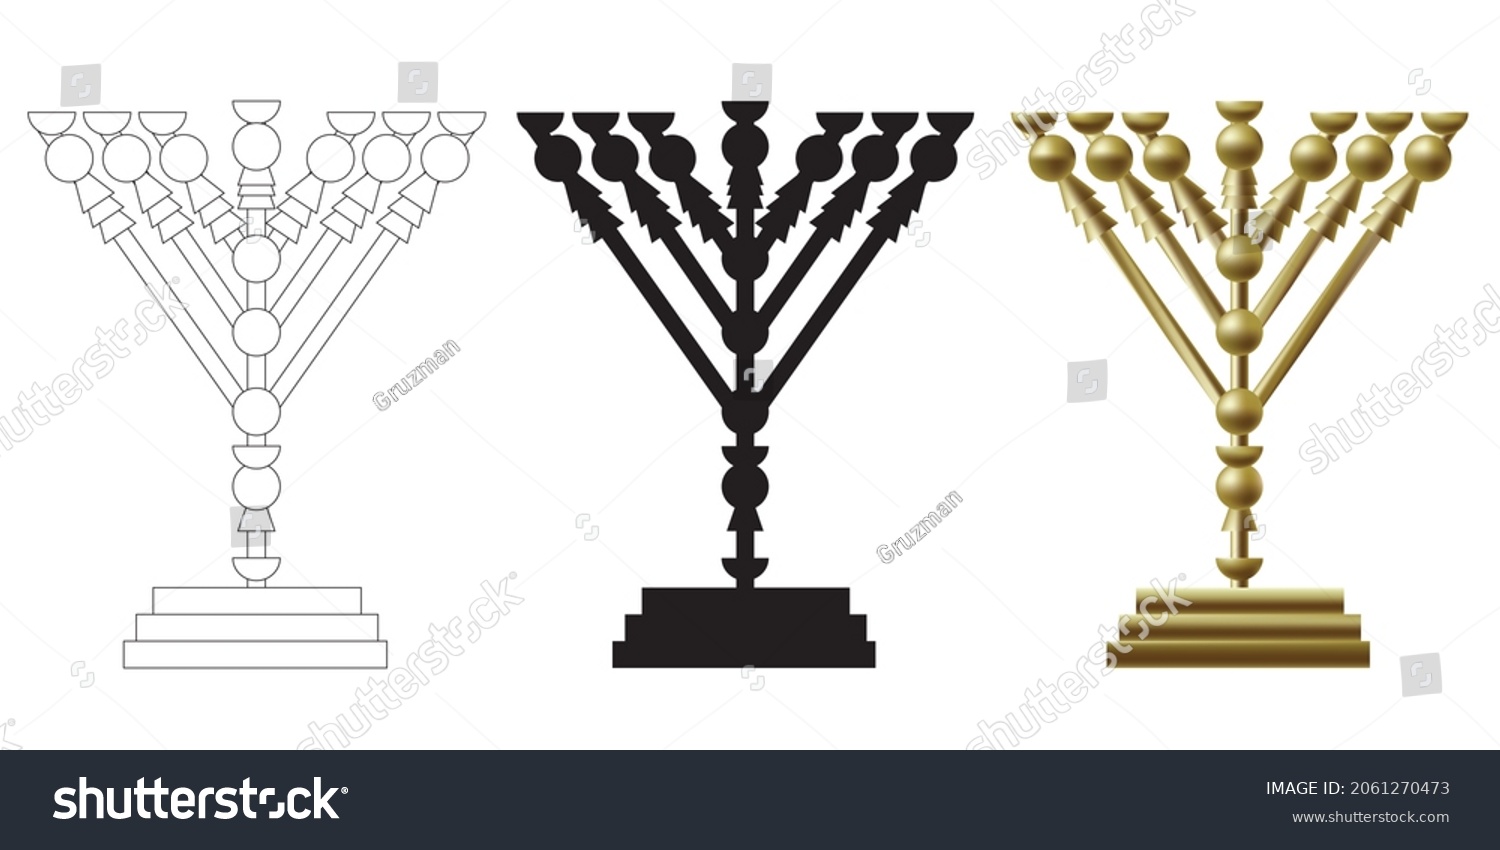 ציור וקטורי של מנורת הזהב  צללית שחורה לצביעה צבעוני בבית המקדש כלי המקדש בית המקדש קליפ ארט ק...jpg